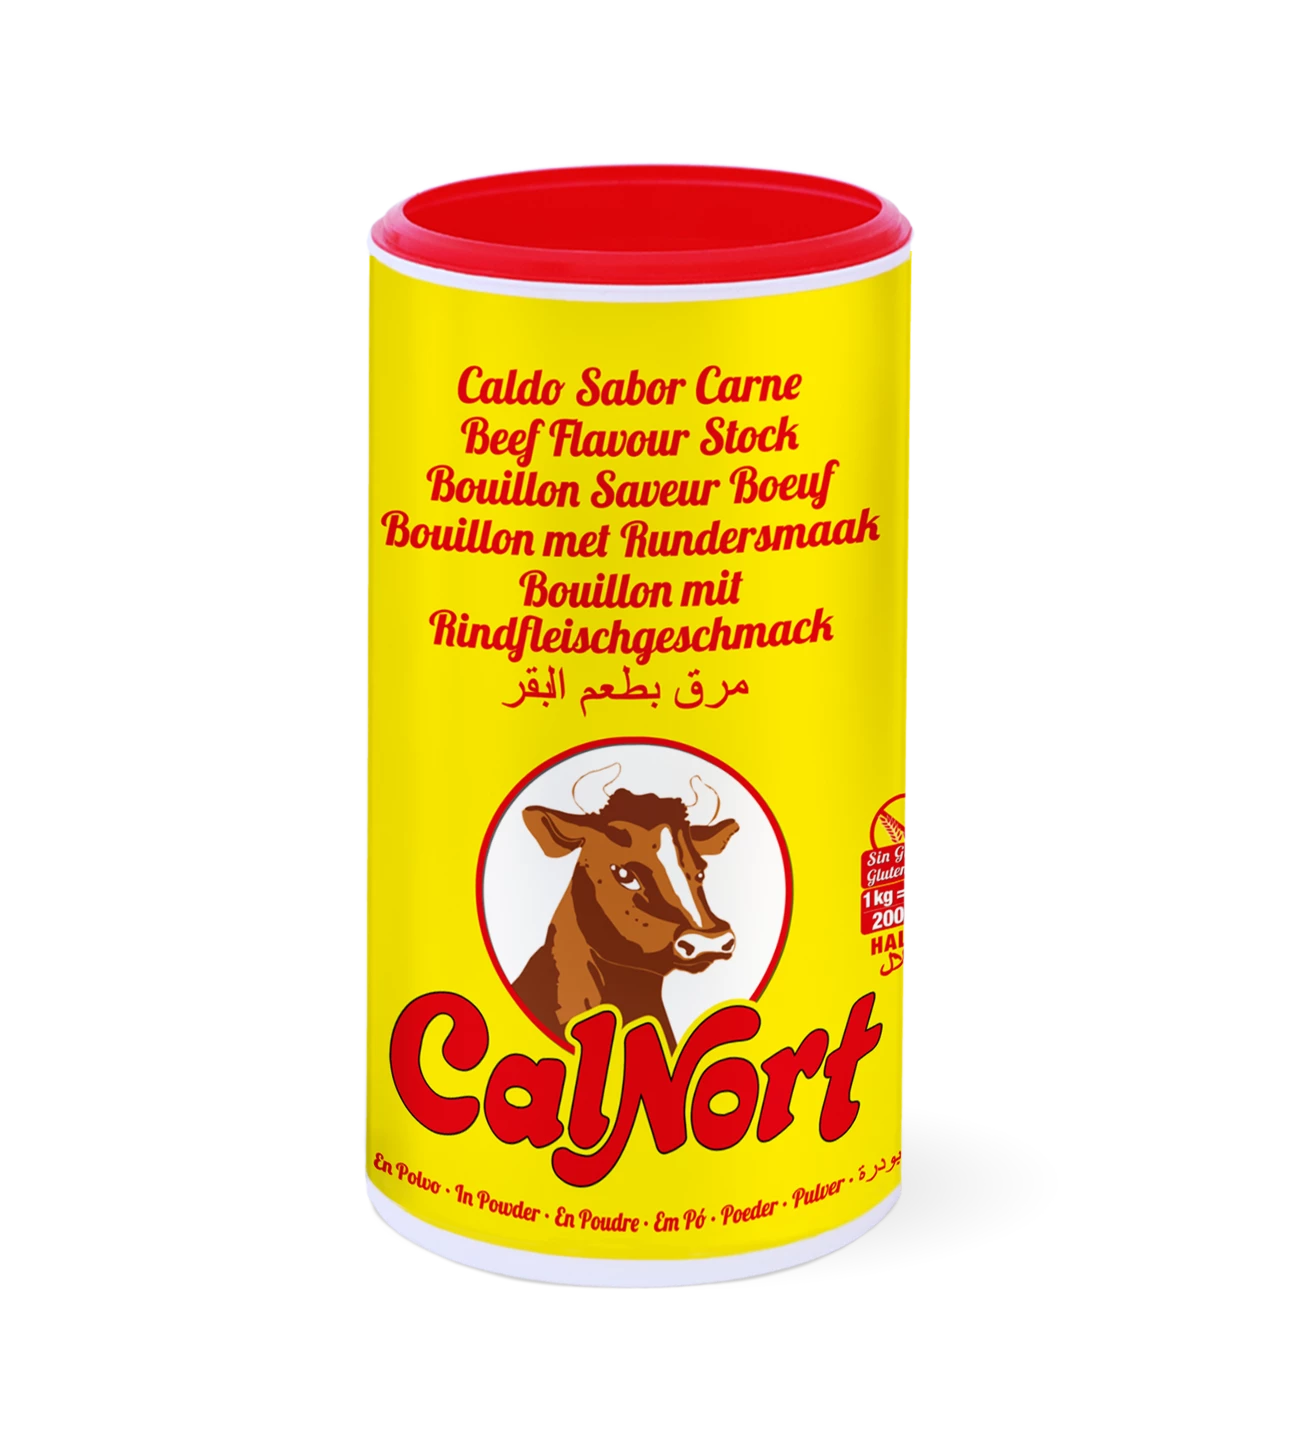 ビーフ風味スープ 1kg - CALNORT